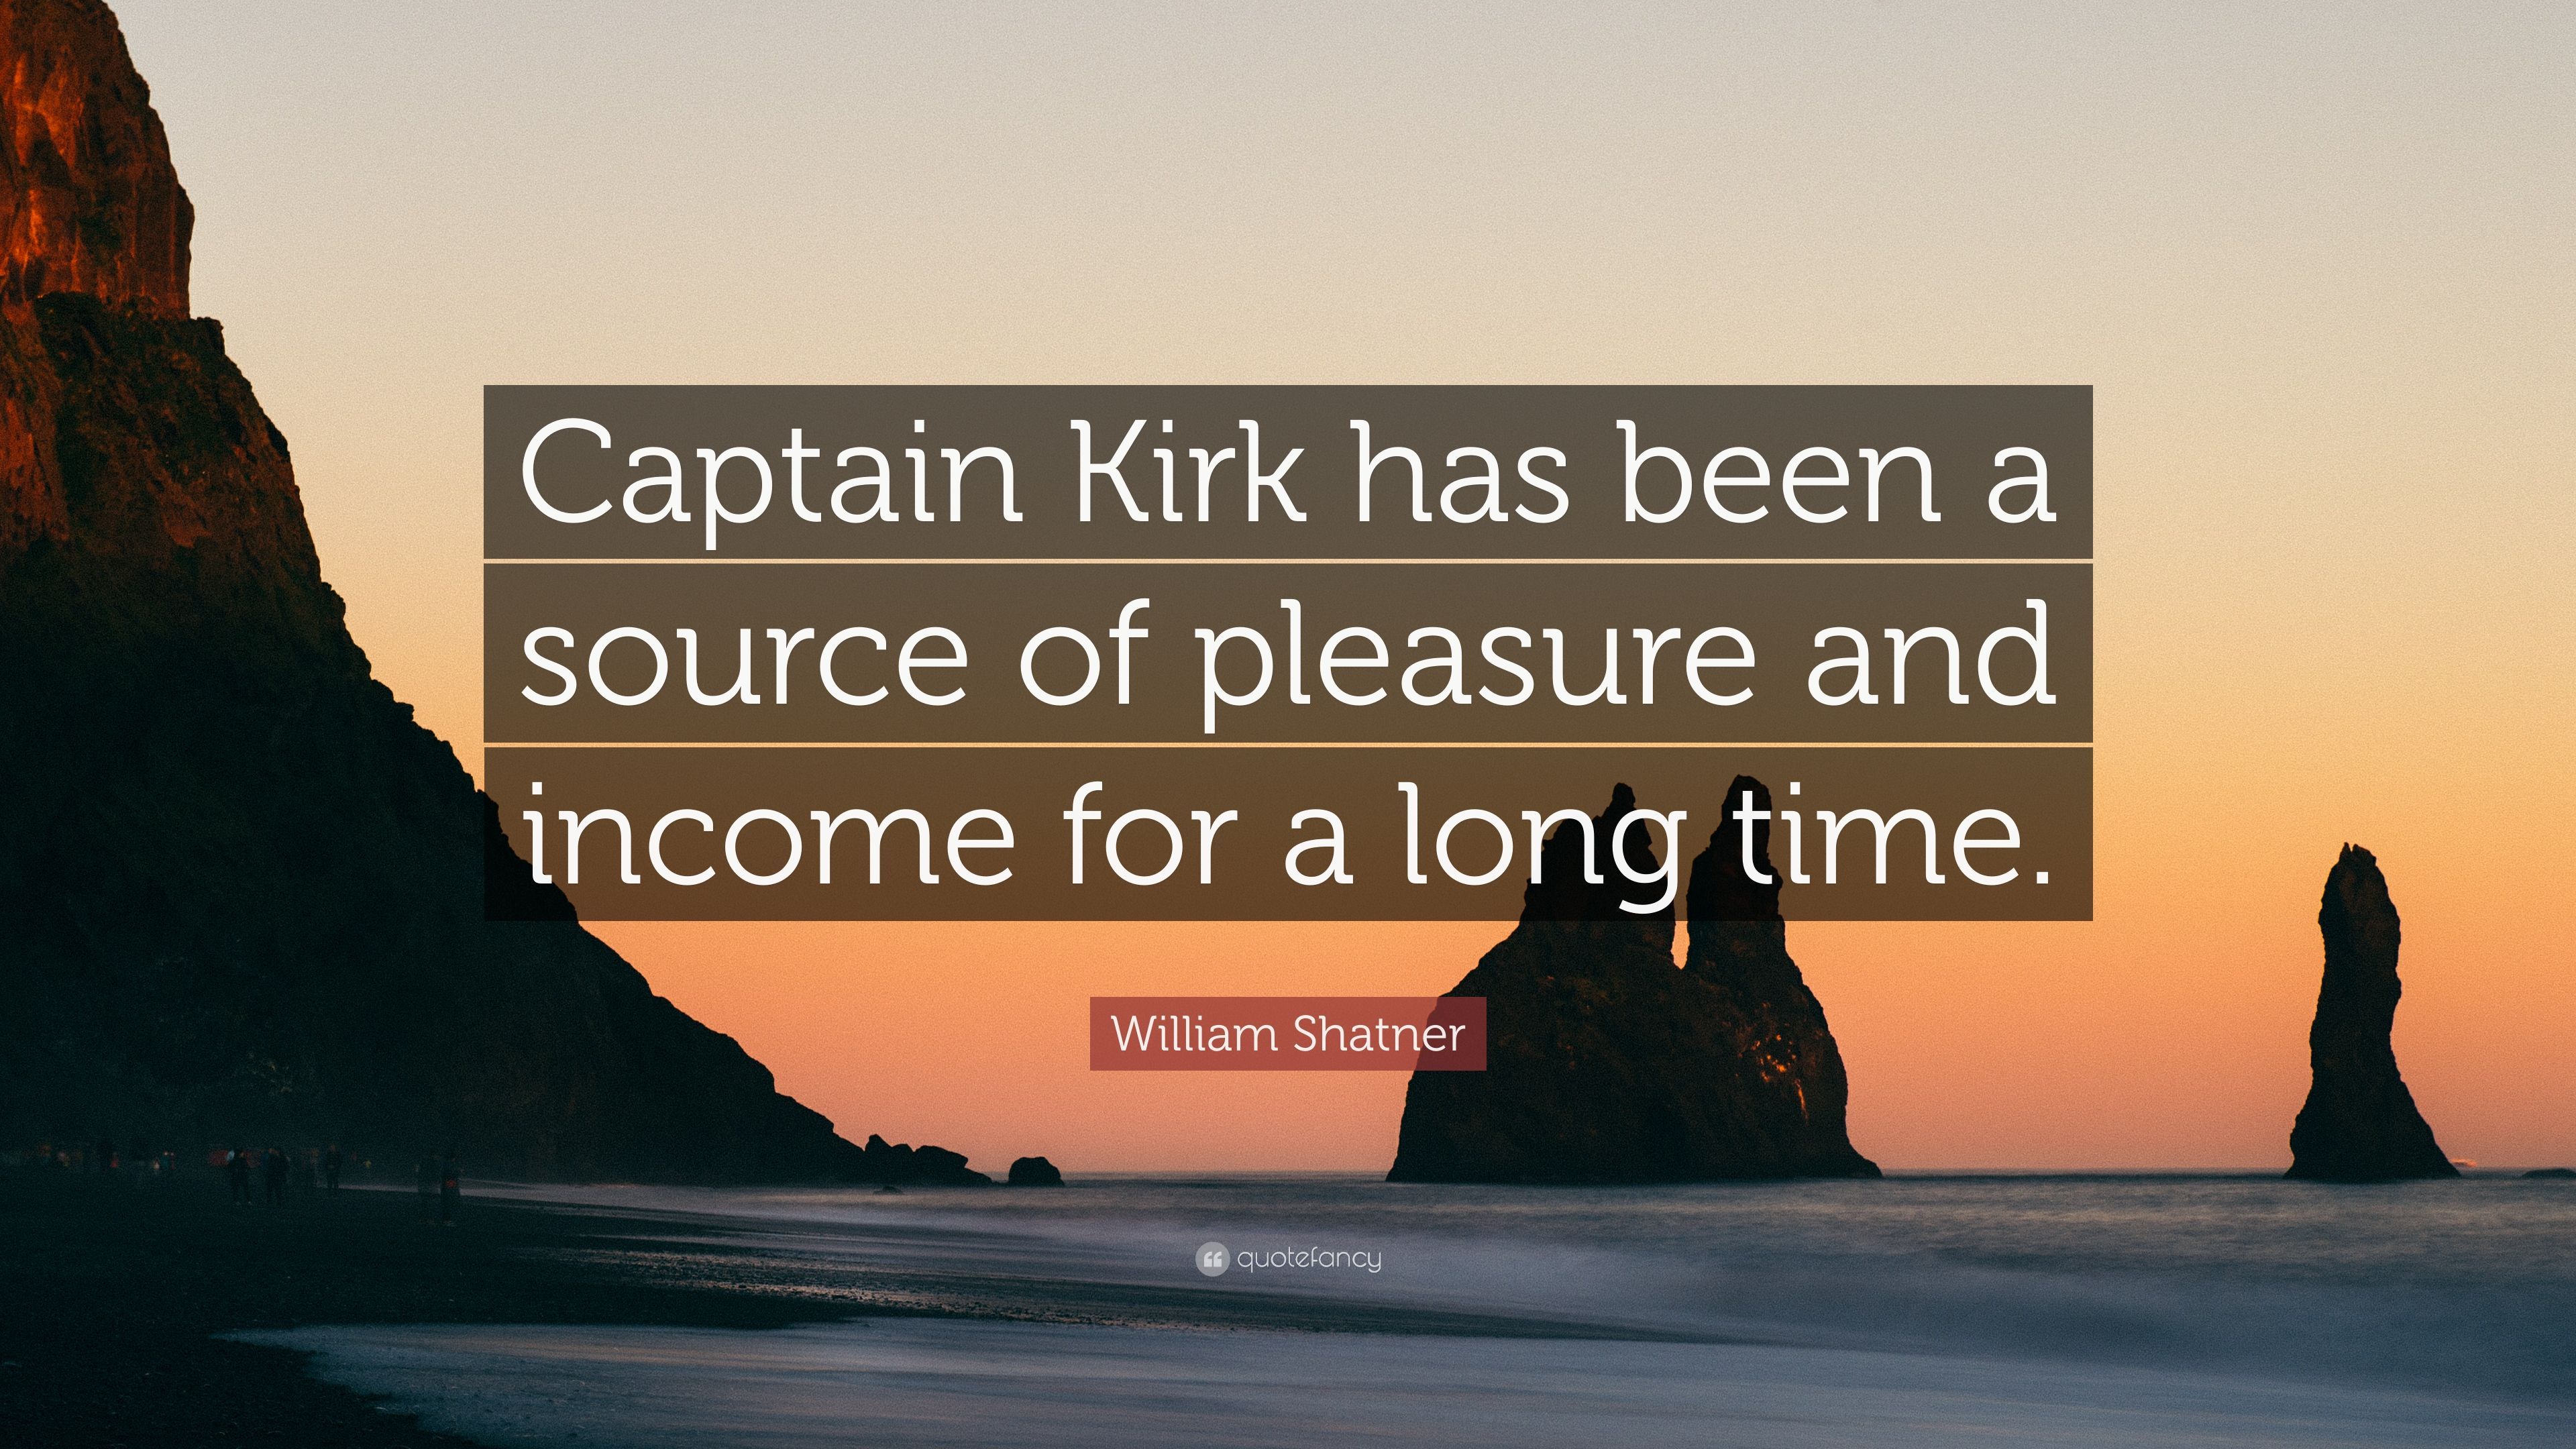 William Shatner Quote: “Captain Kirk has been a source of pleasure